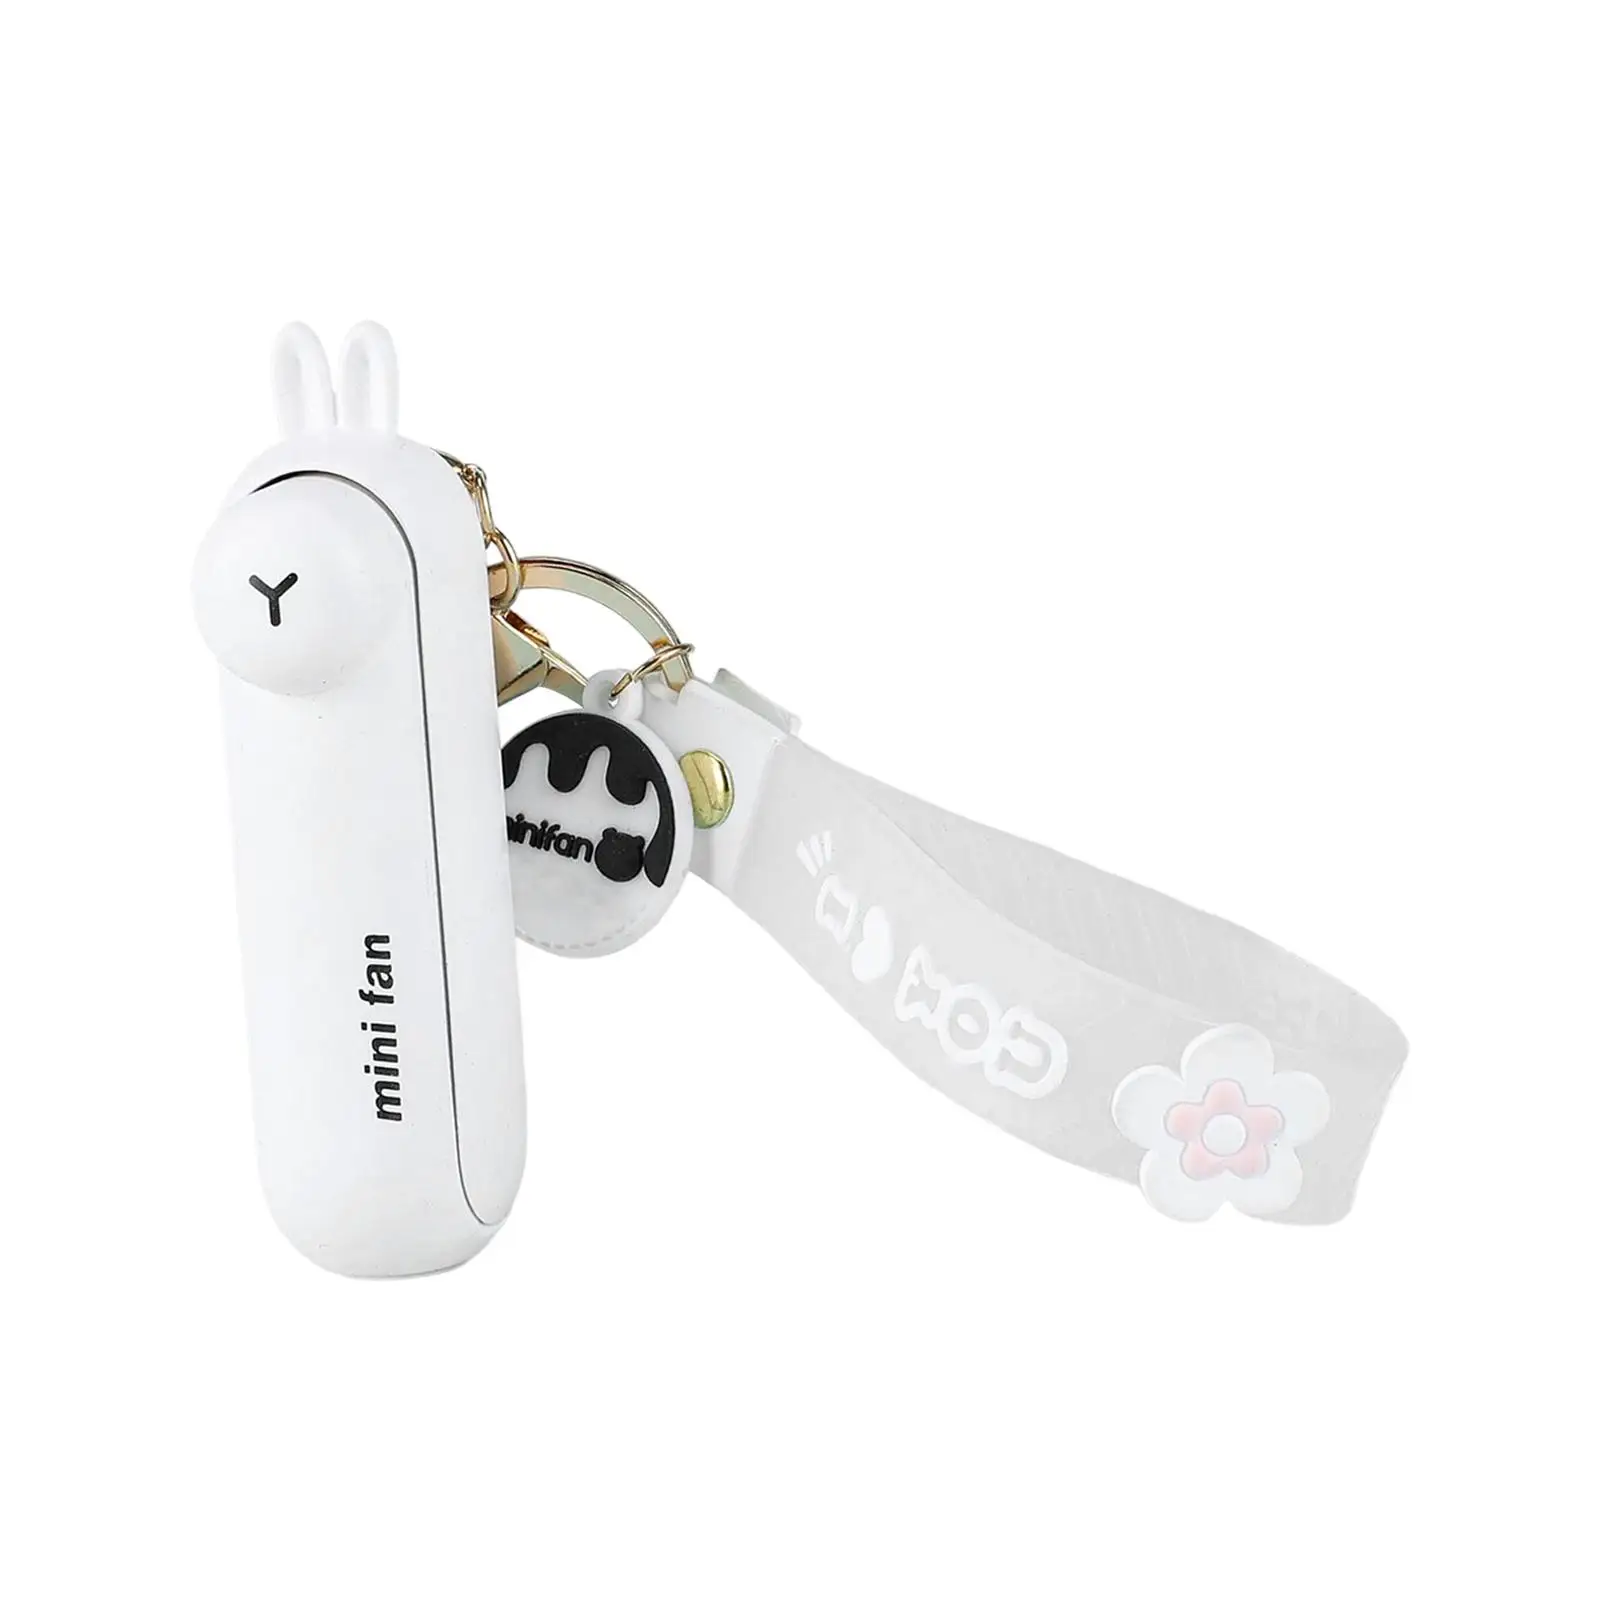 Keychain Fan Portable Mini Fan with Light USB Rechargeable Small Pocket Fan Cute Cooling Fan for Home Outdoor